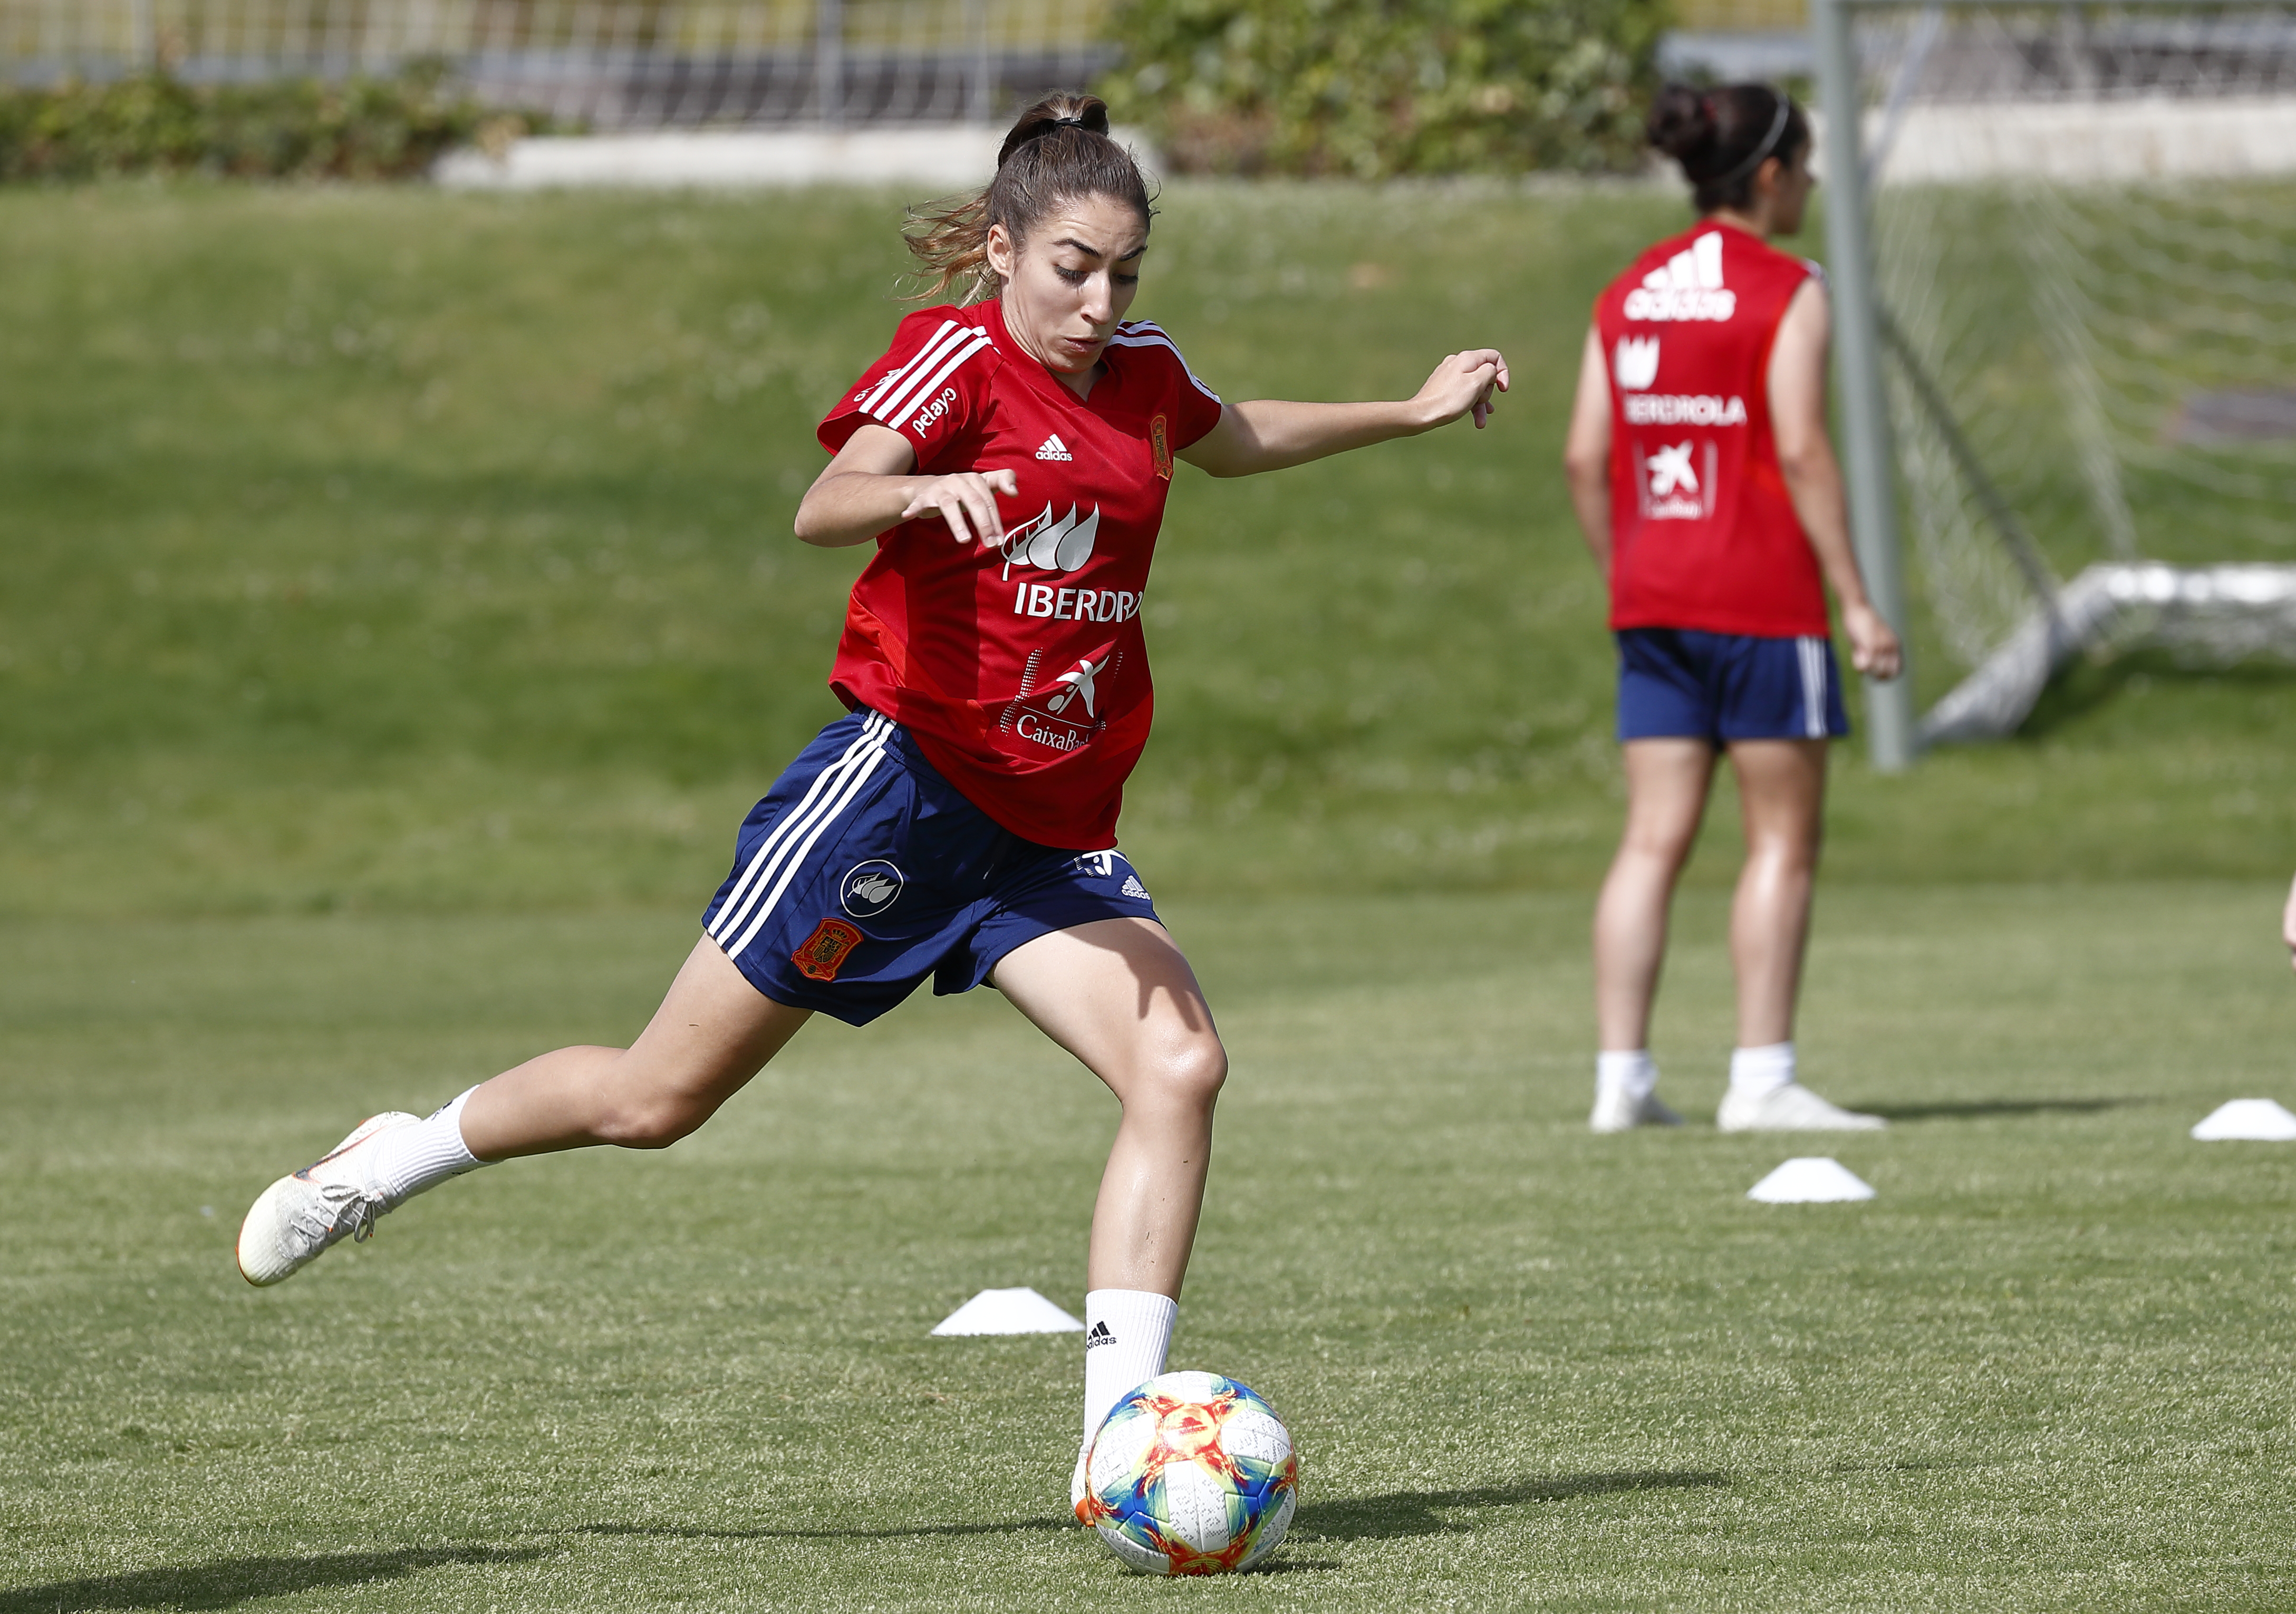 Olga Carmona, Sevilla FC y selección española